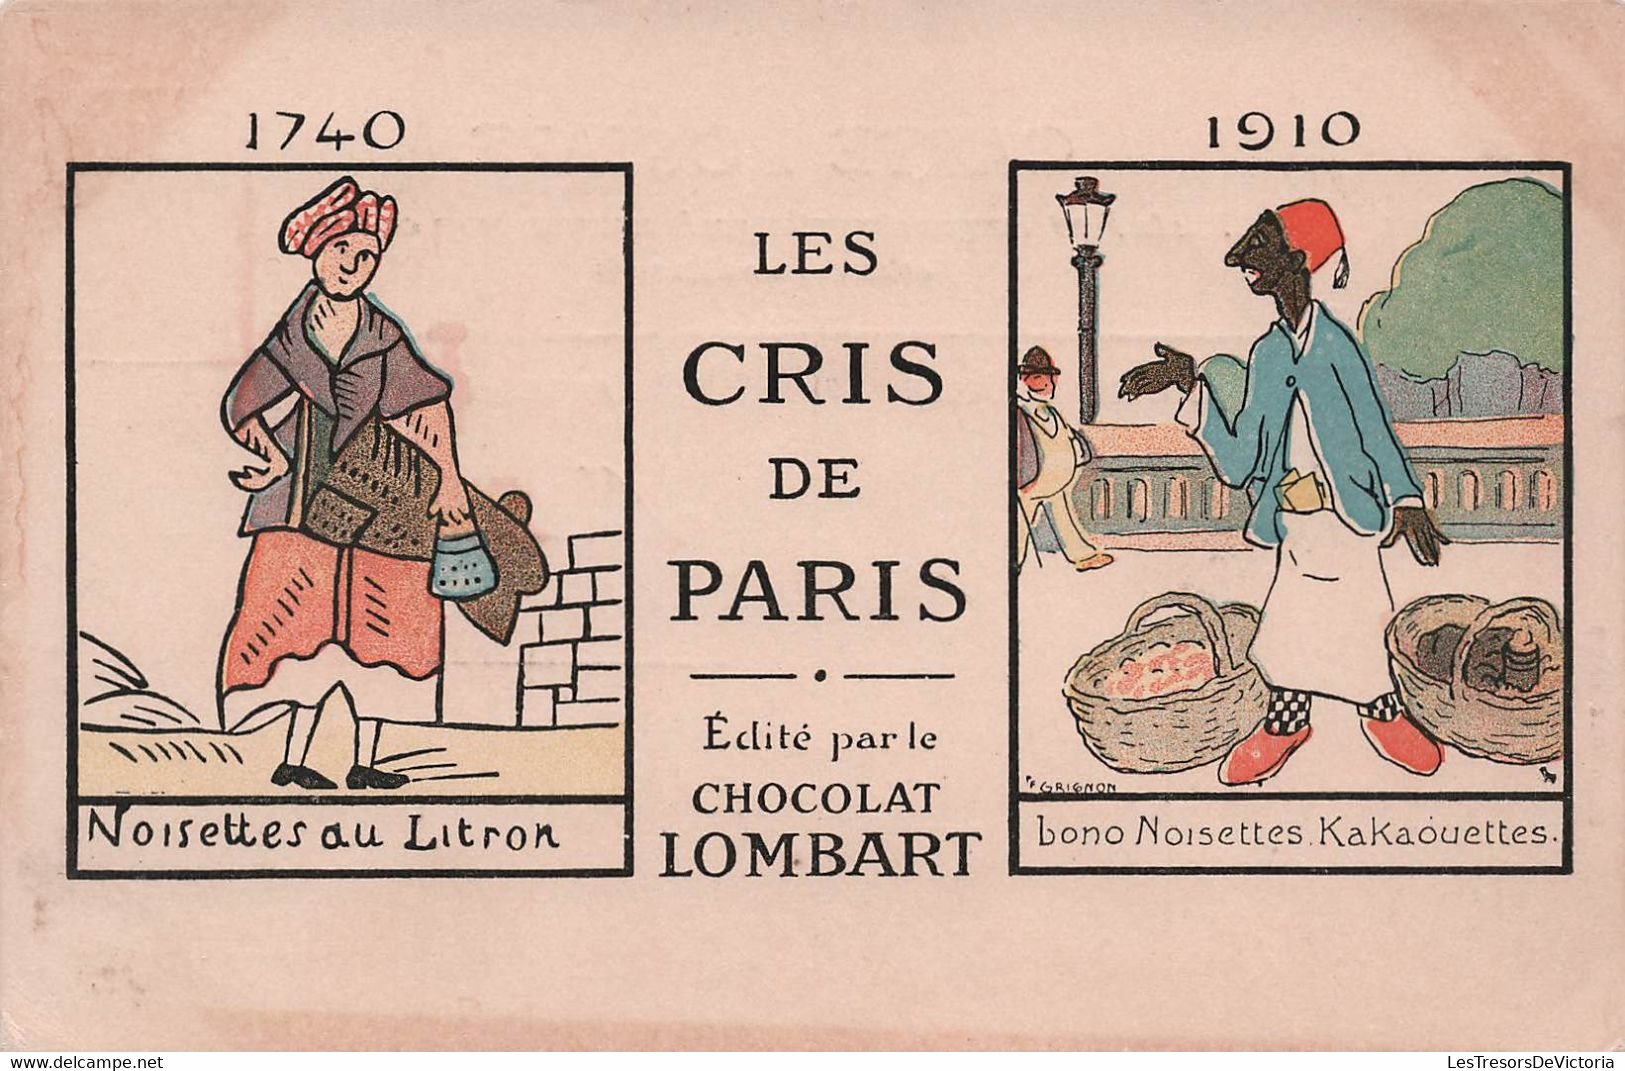 CPA Chocolat Lombart - Les Cris De Paris - Noisettes Au Litron - Bono Noisettes Kakaouettes - Advertising